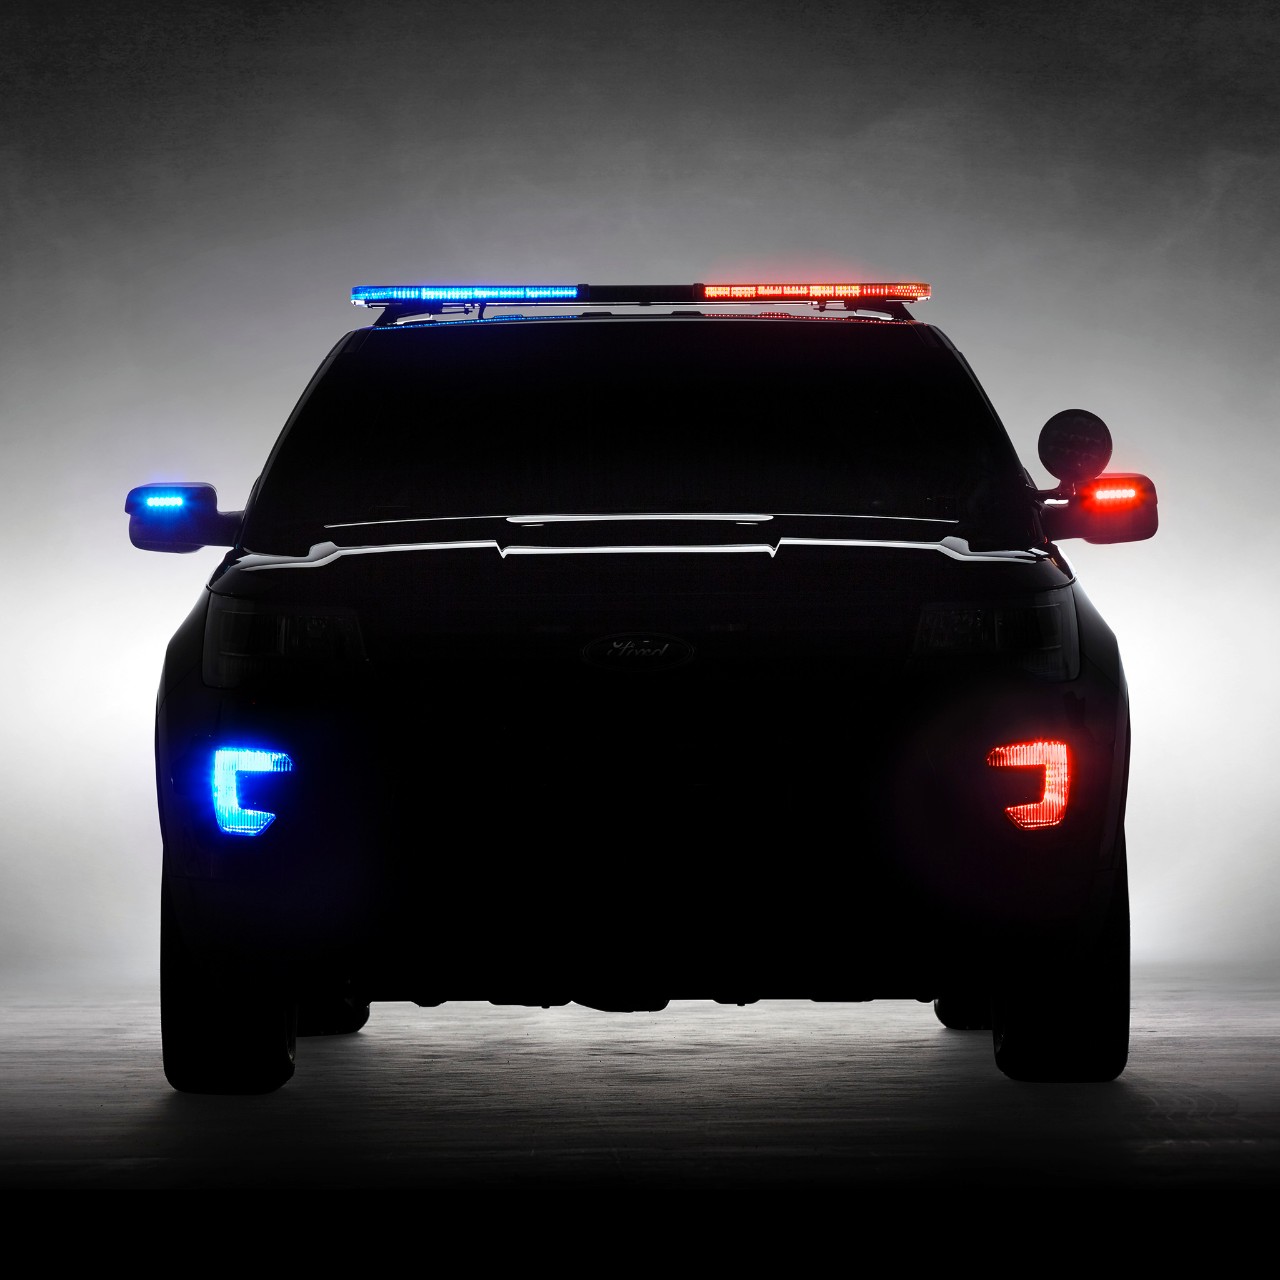 2016 Ford Explorer Police Interceptor Utility Teased Before